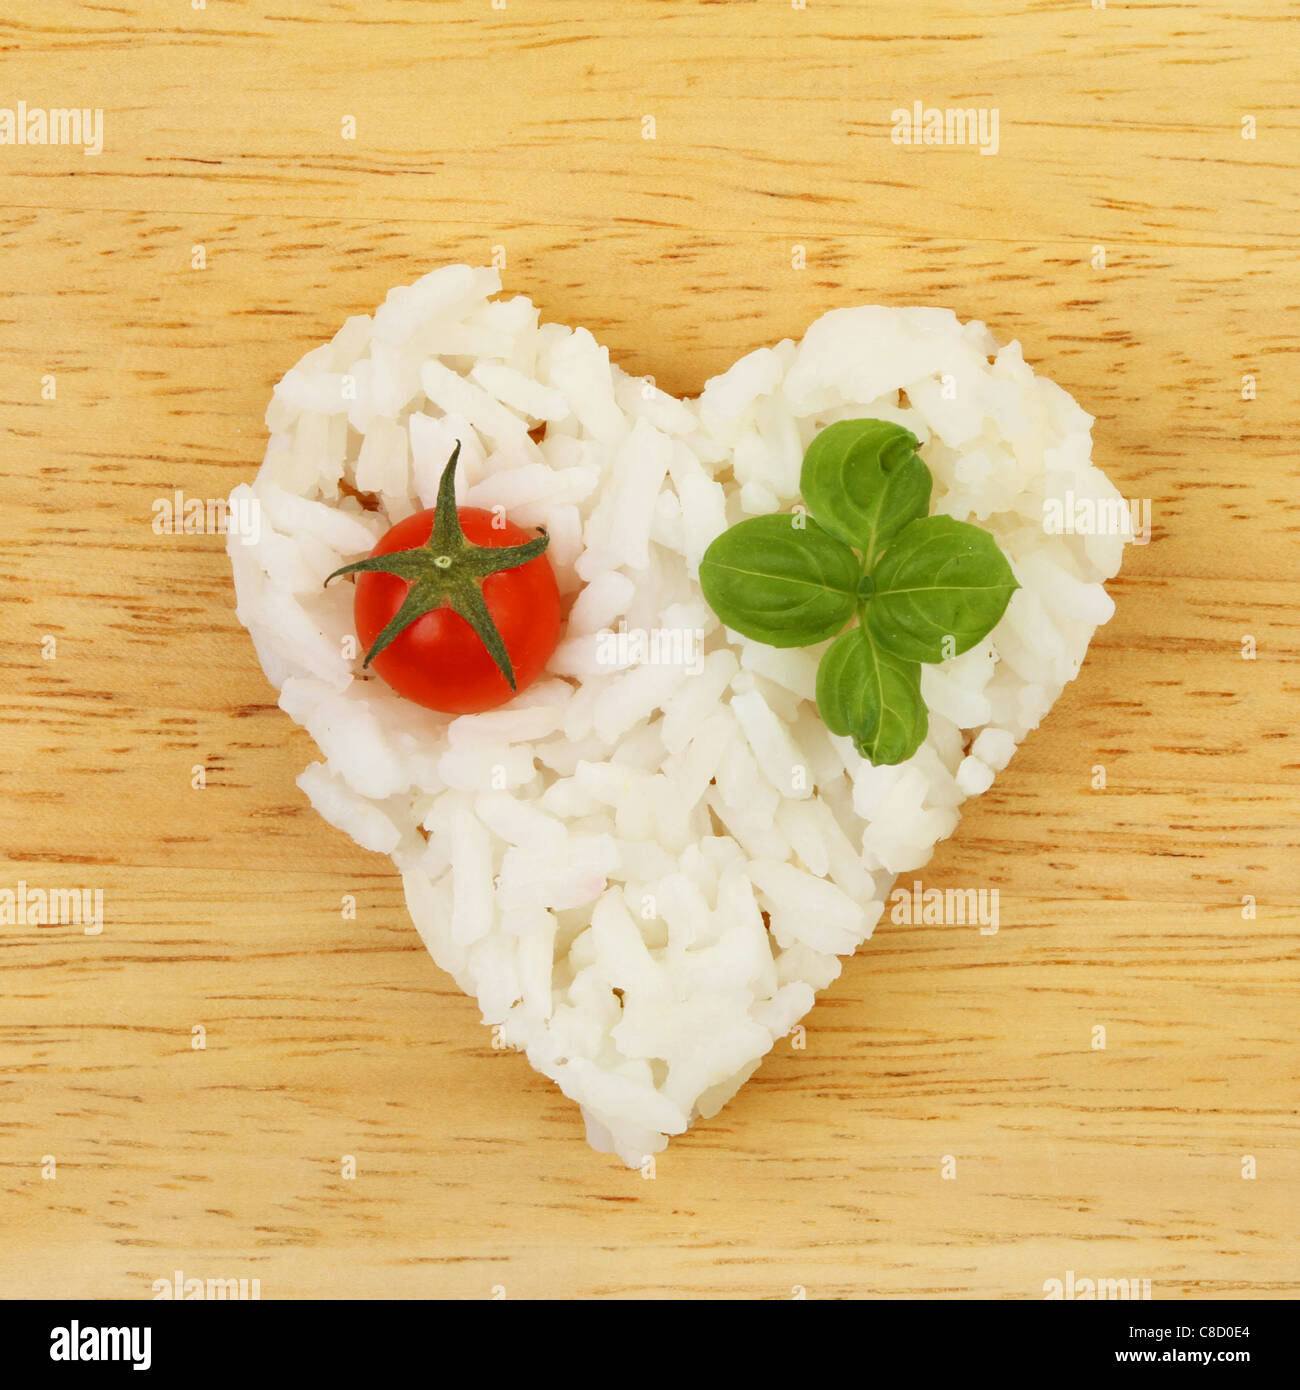 Gesunde Ernährung, Reis in Form eines Herzens mit Tomaten und Basilikum auf einem Holzbrett Stockfoto